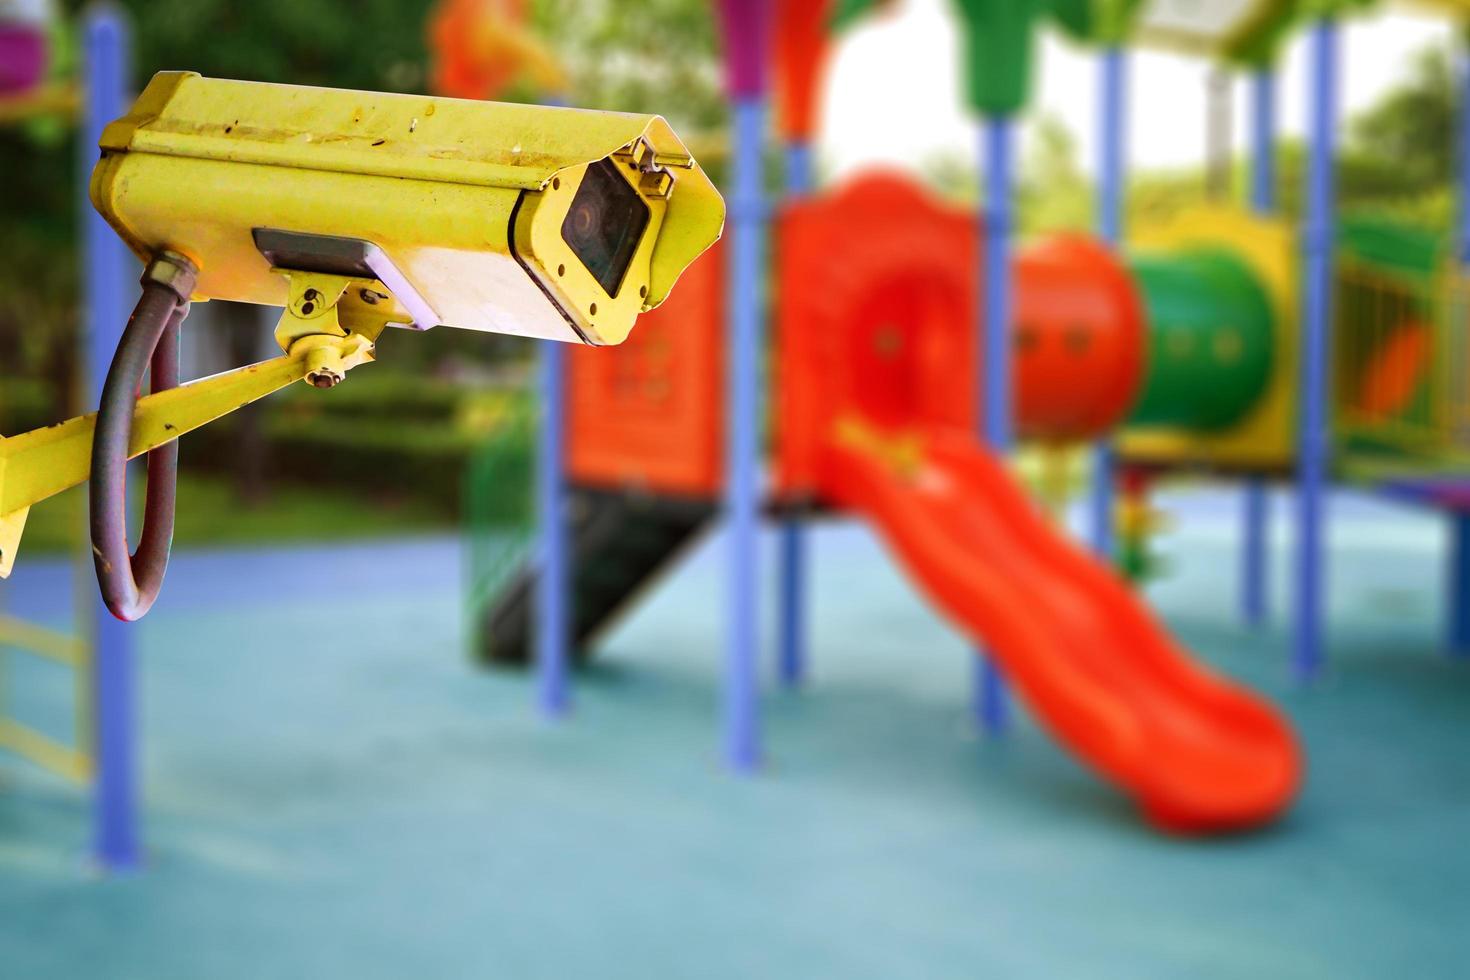 telecamera a circuito chiuso al parco giochi per bambini per sicurezza foto